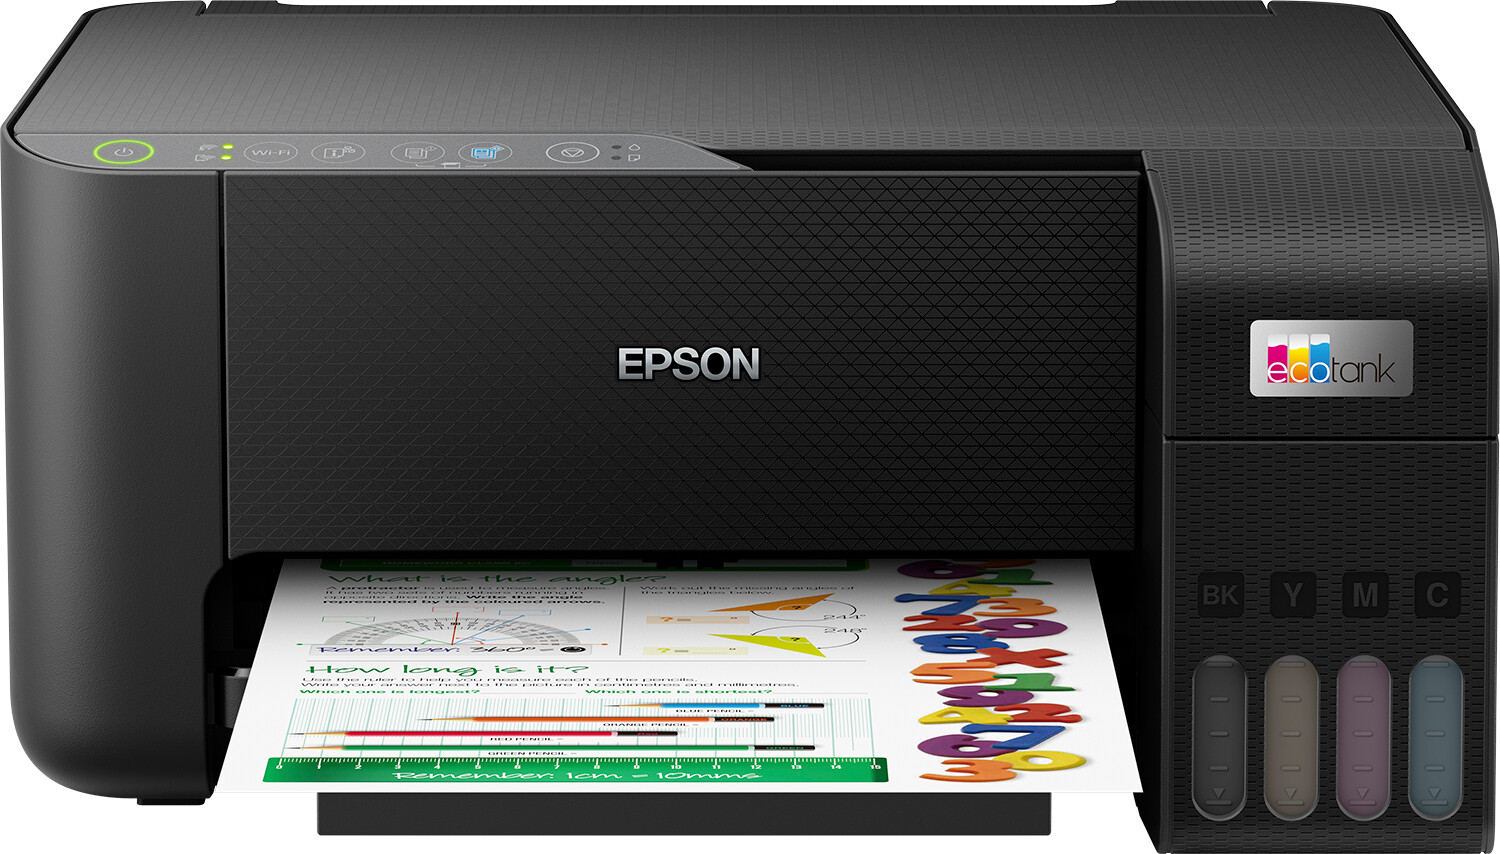 Promo Epson imprimante multifonction réf. ecotank et-2810 chez Cora